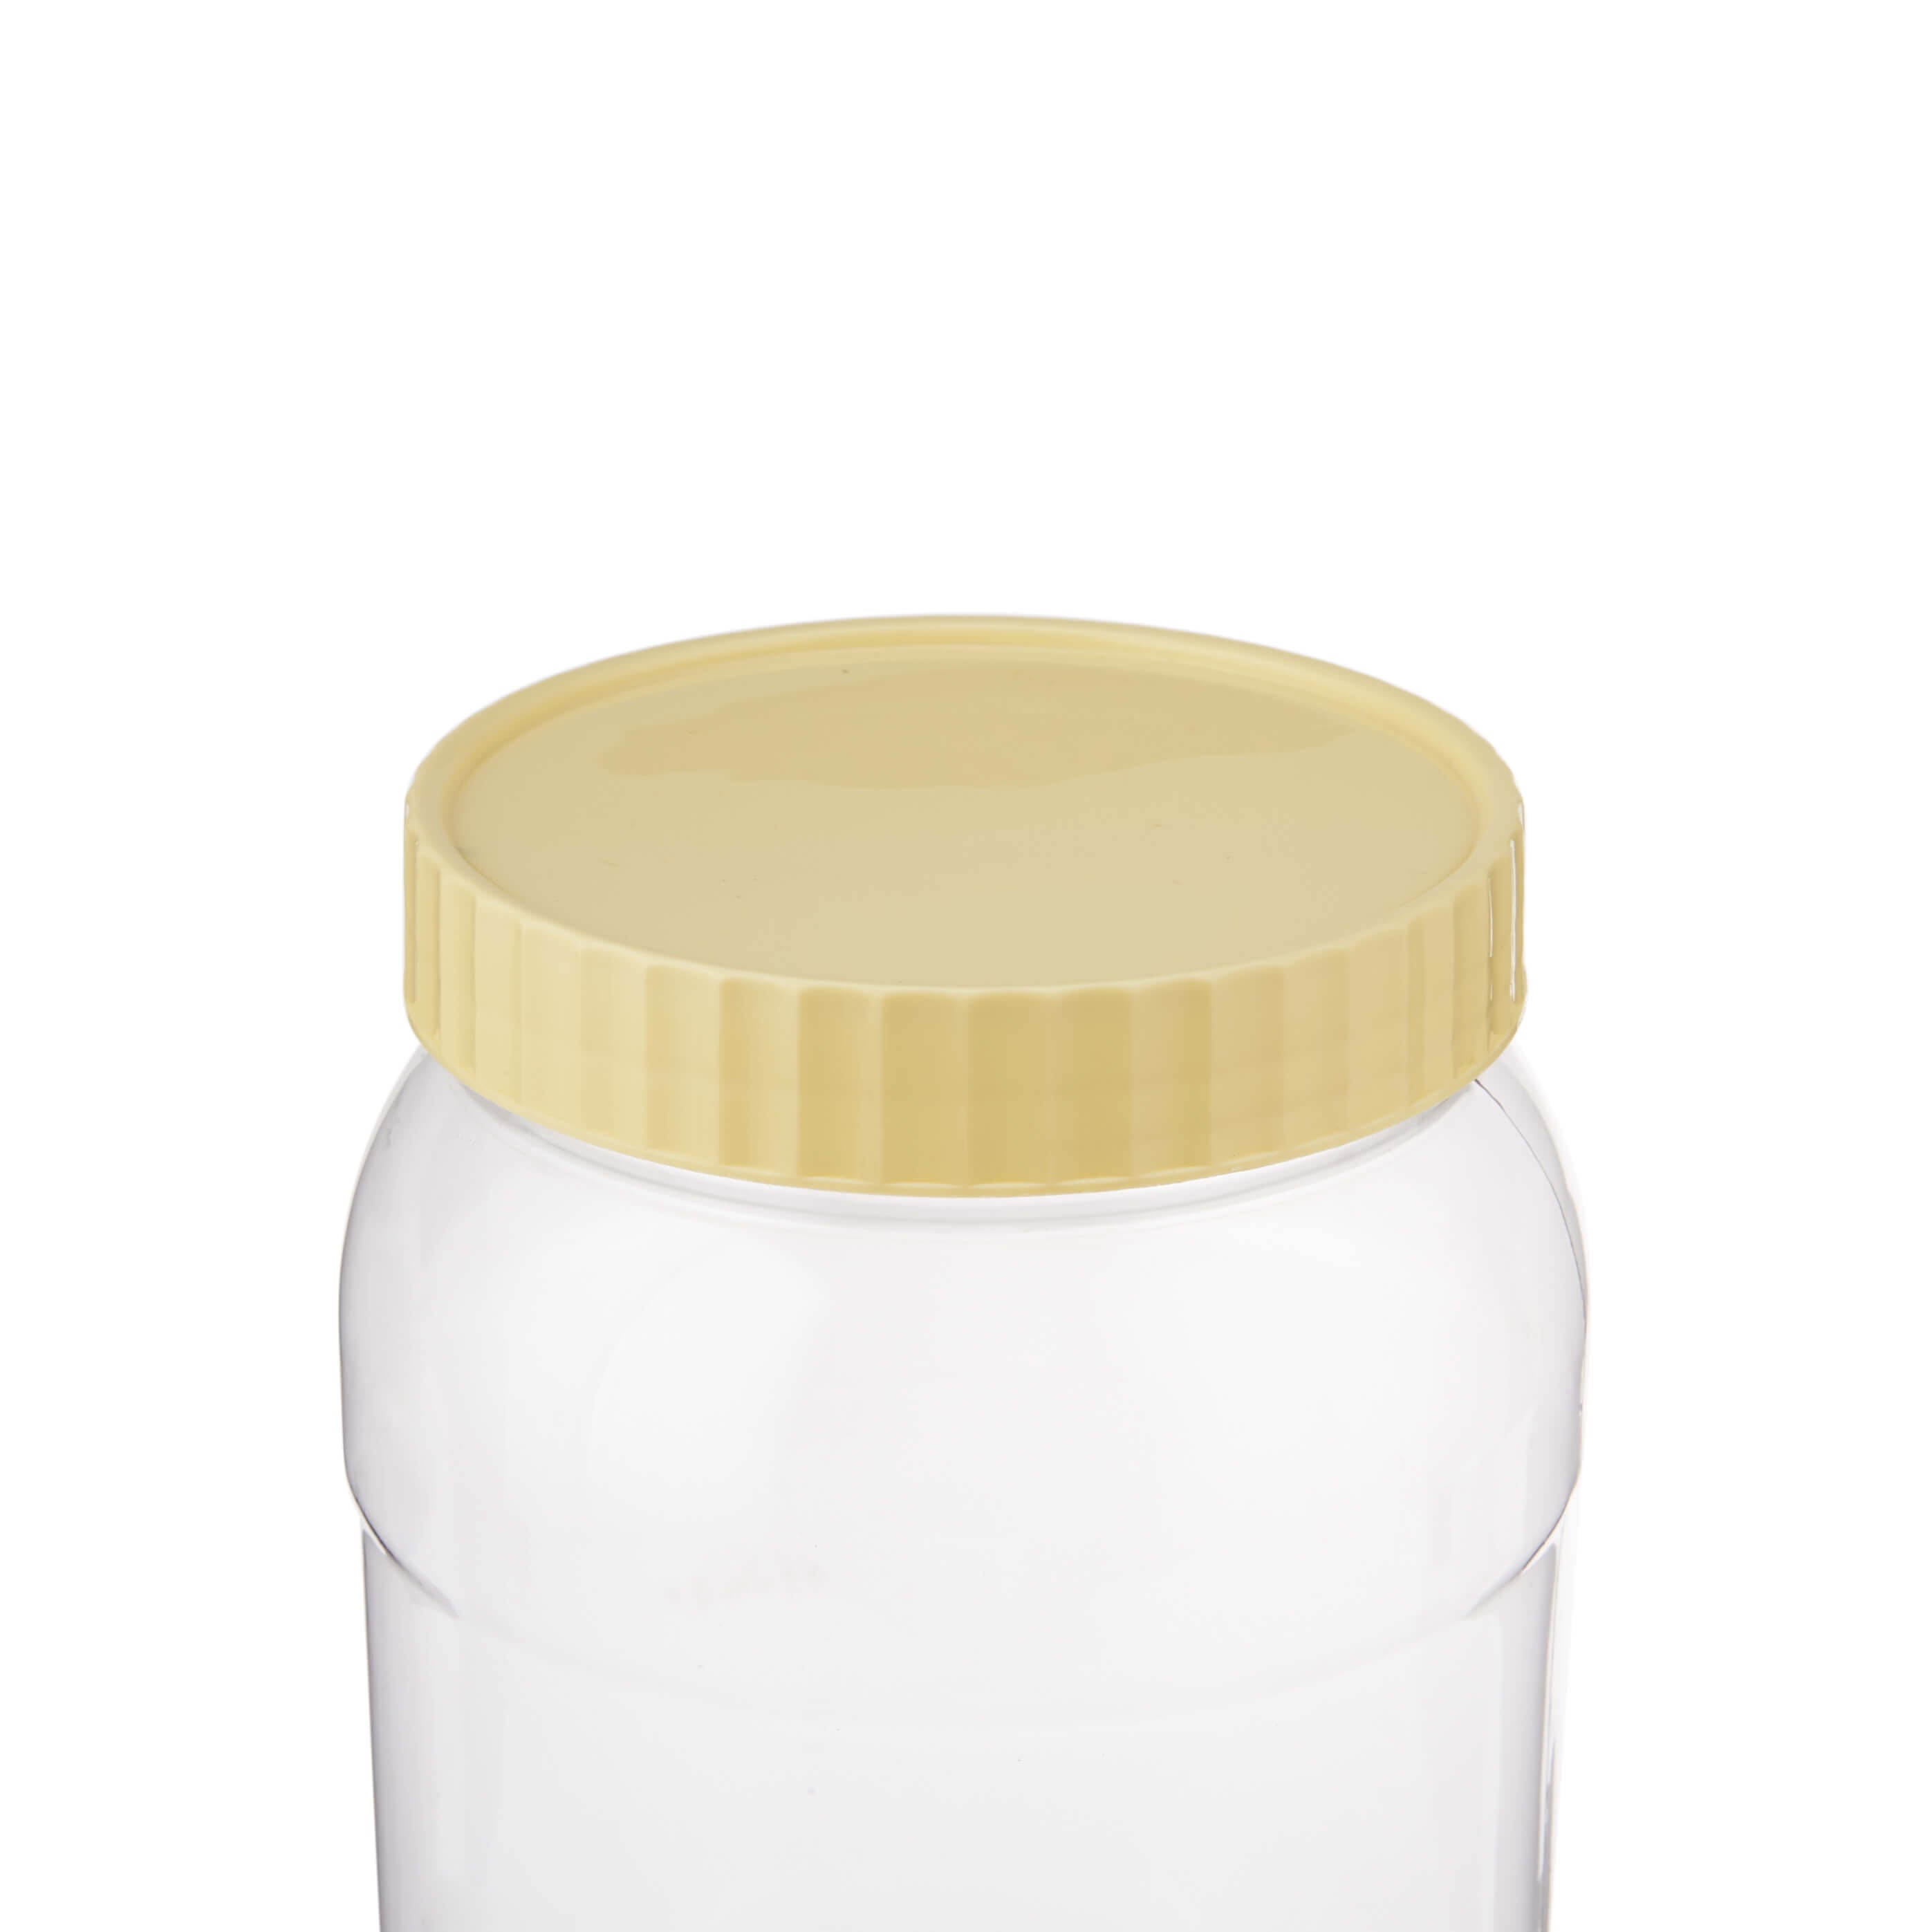 2000 ml Plastic Storage Jar With Lid - Hotpack Global